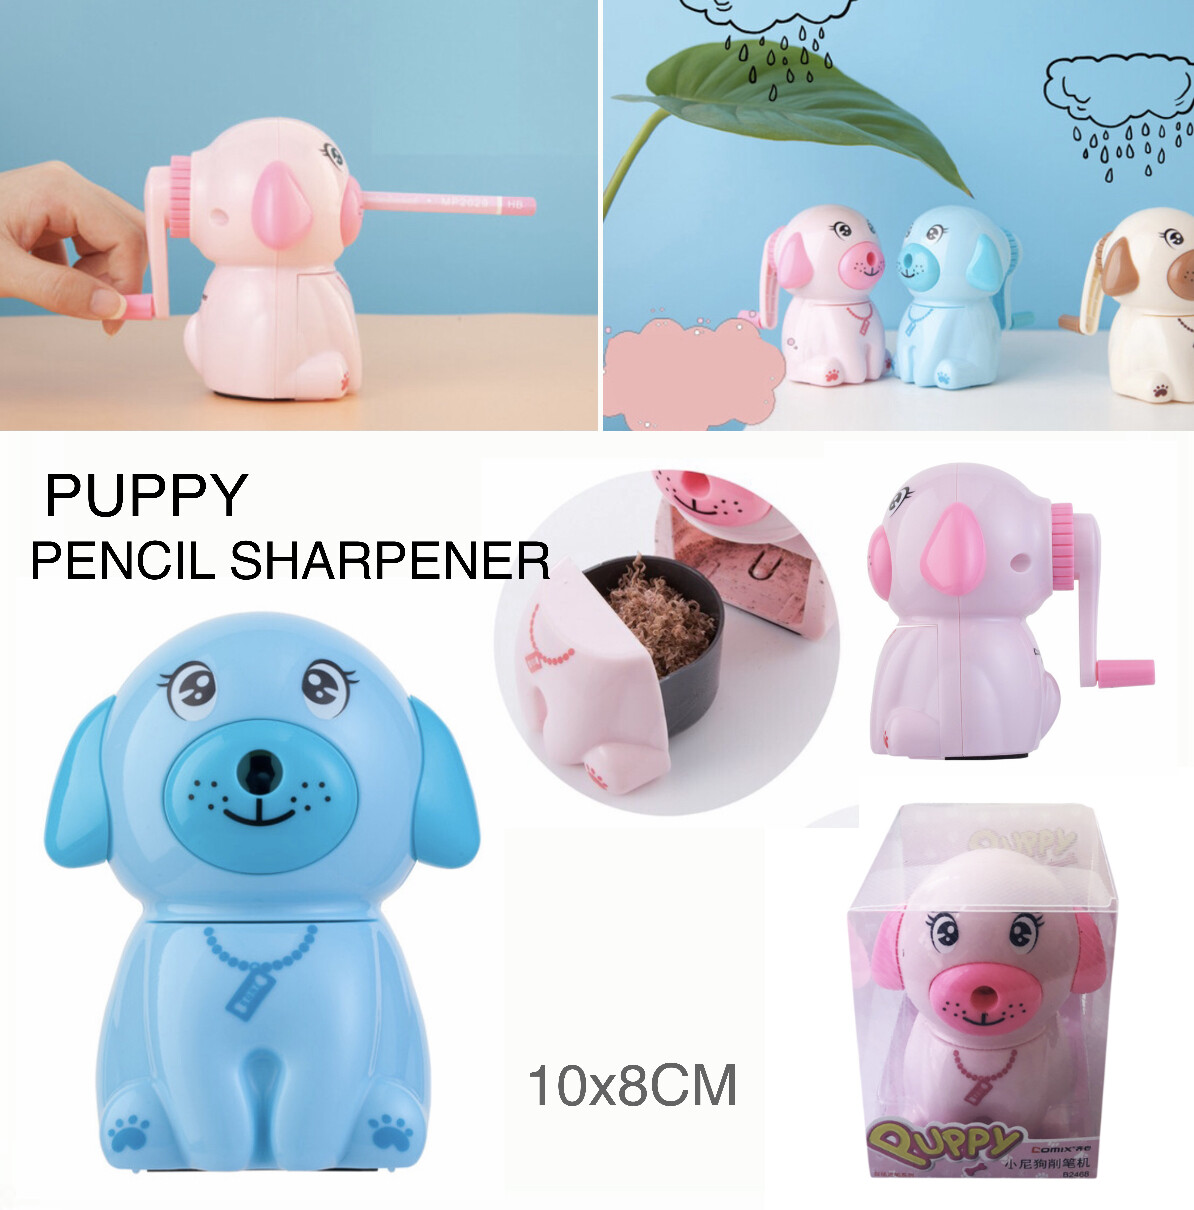 Puppy Pencil Sharpener